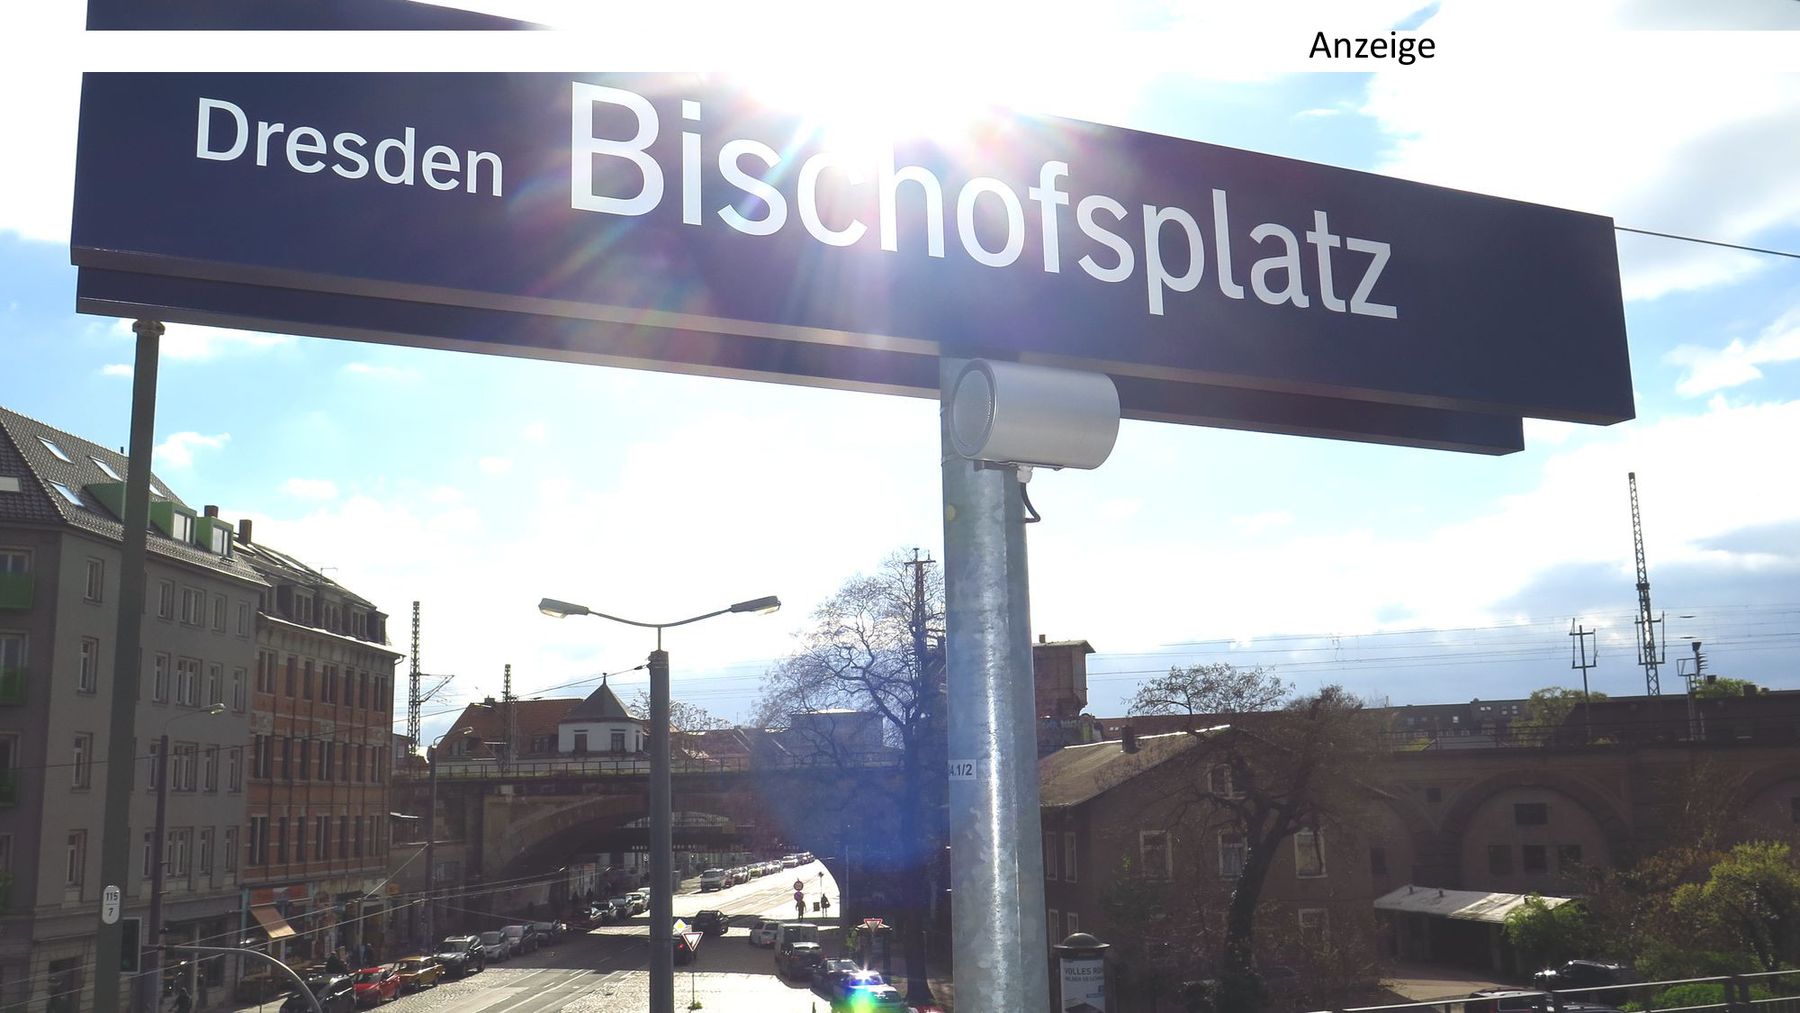 Anzeige S-Bahn